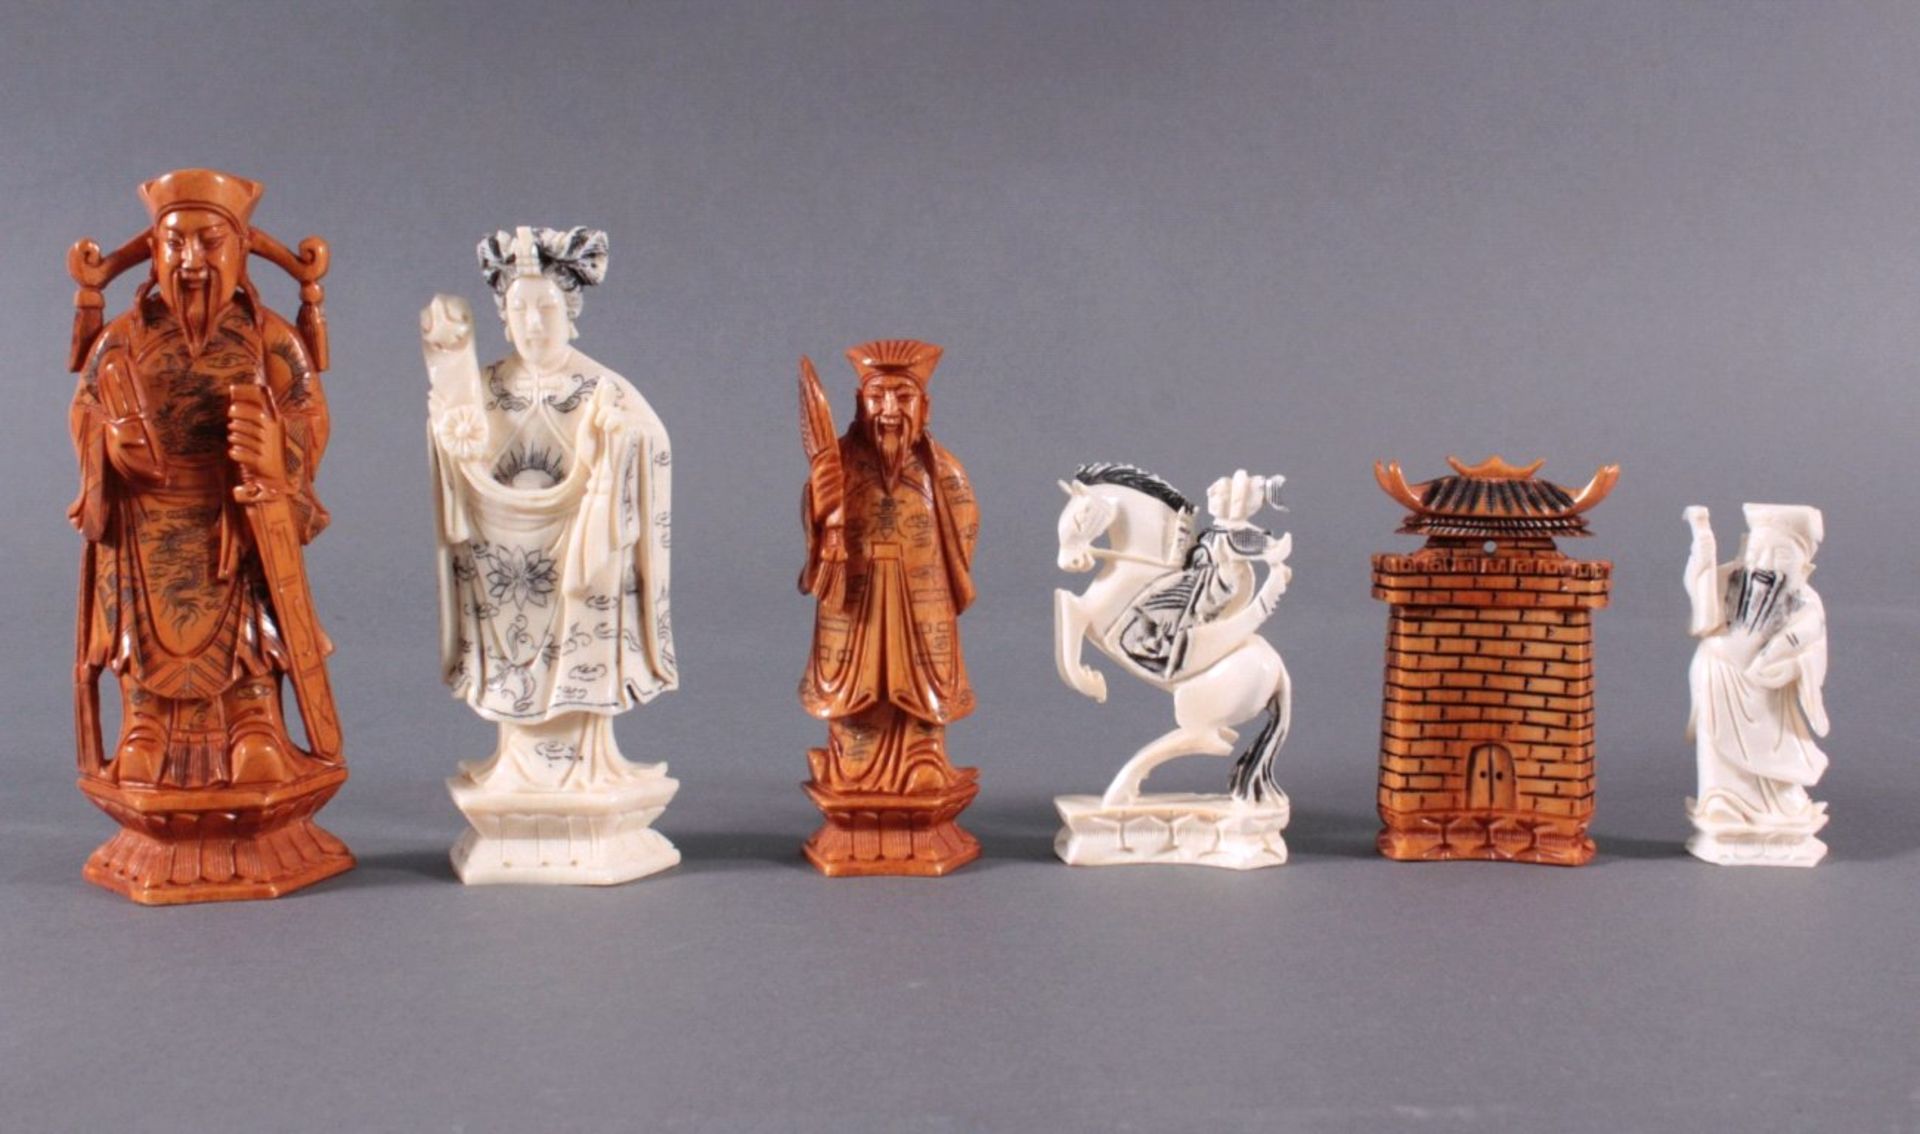 Elfenbein-Schachspiel - China32 Schachfiguren, Elfenbein geschnitzt, partiell brauneingefärbt, in